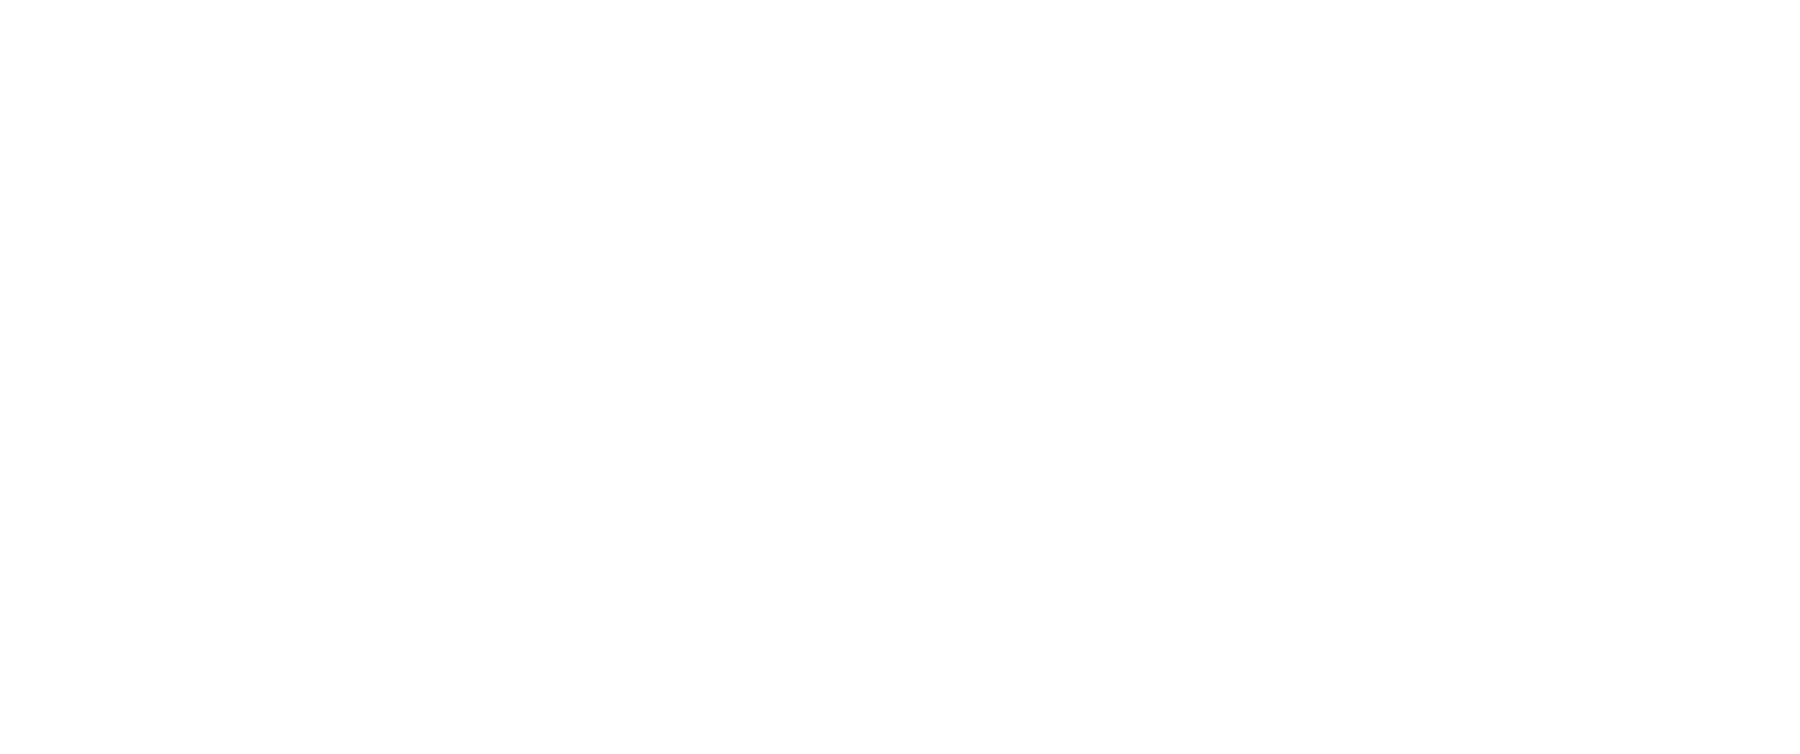 Ted Sun